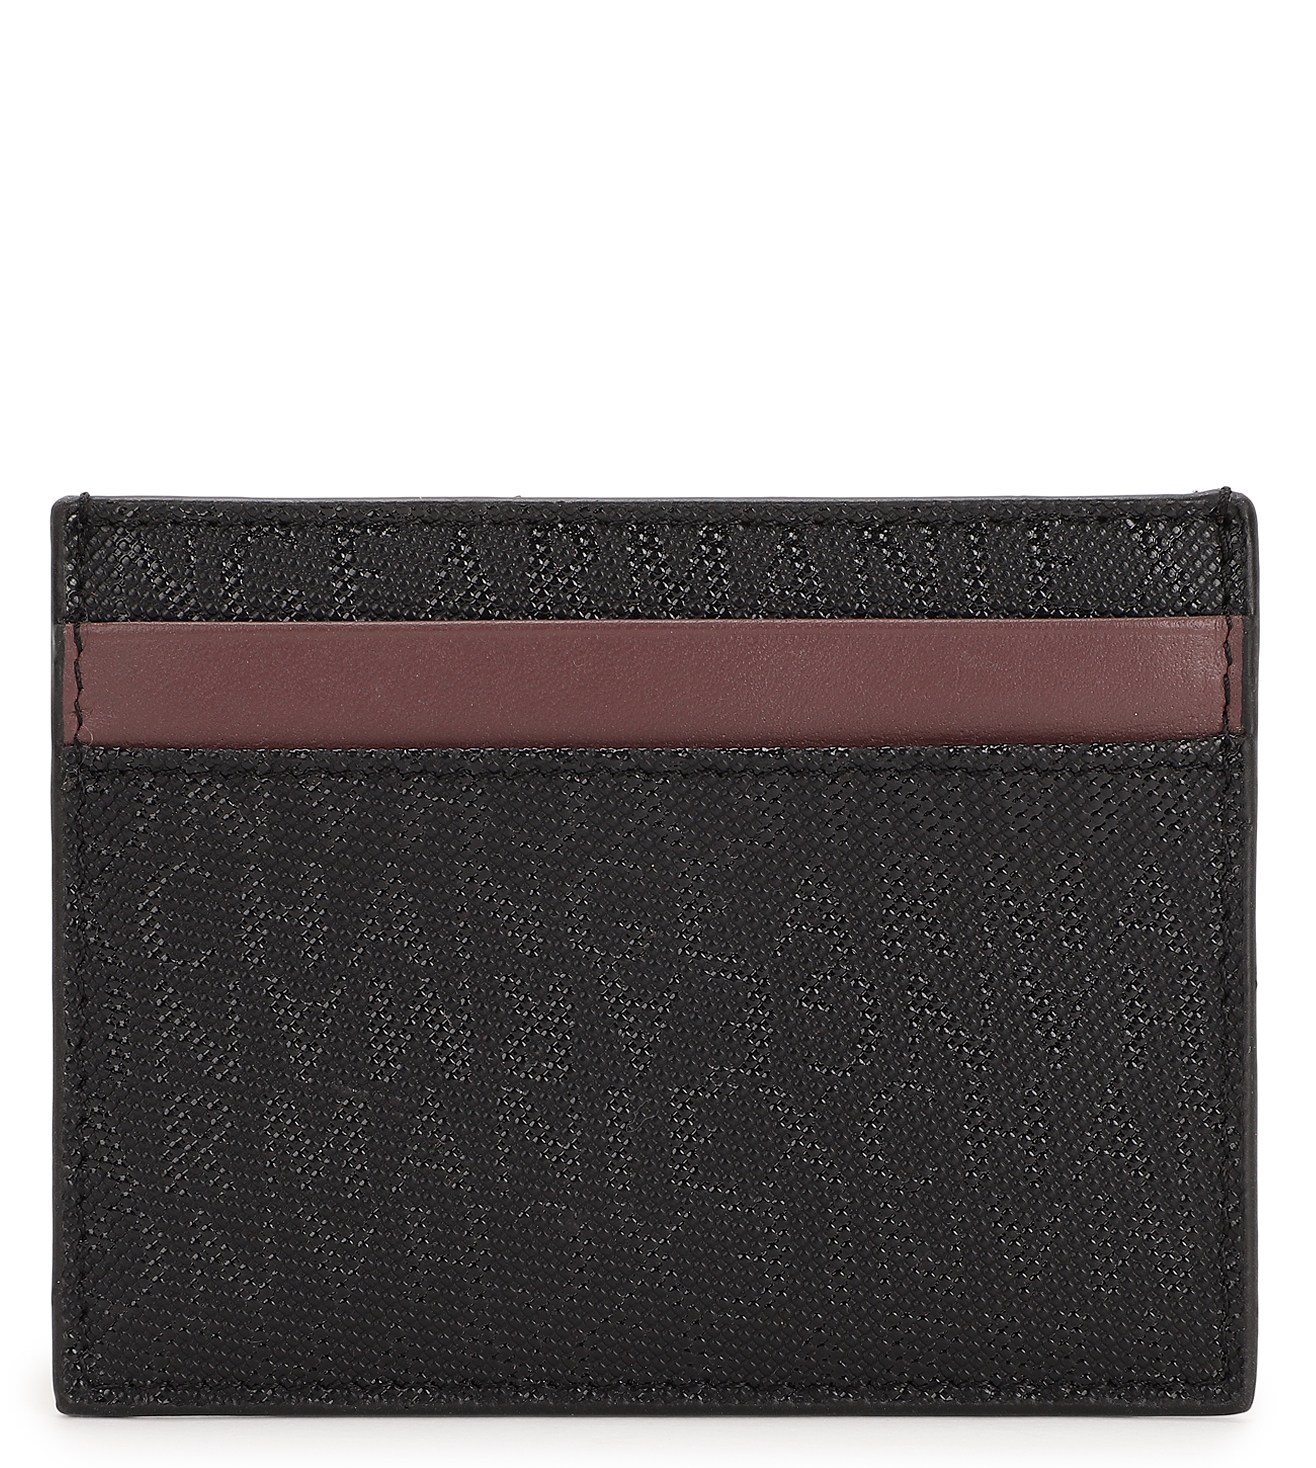 Armani Men Wallet Money Bag Chocolate Color - 3044